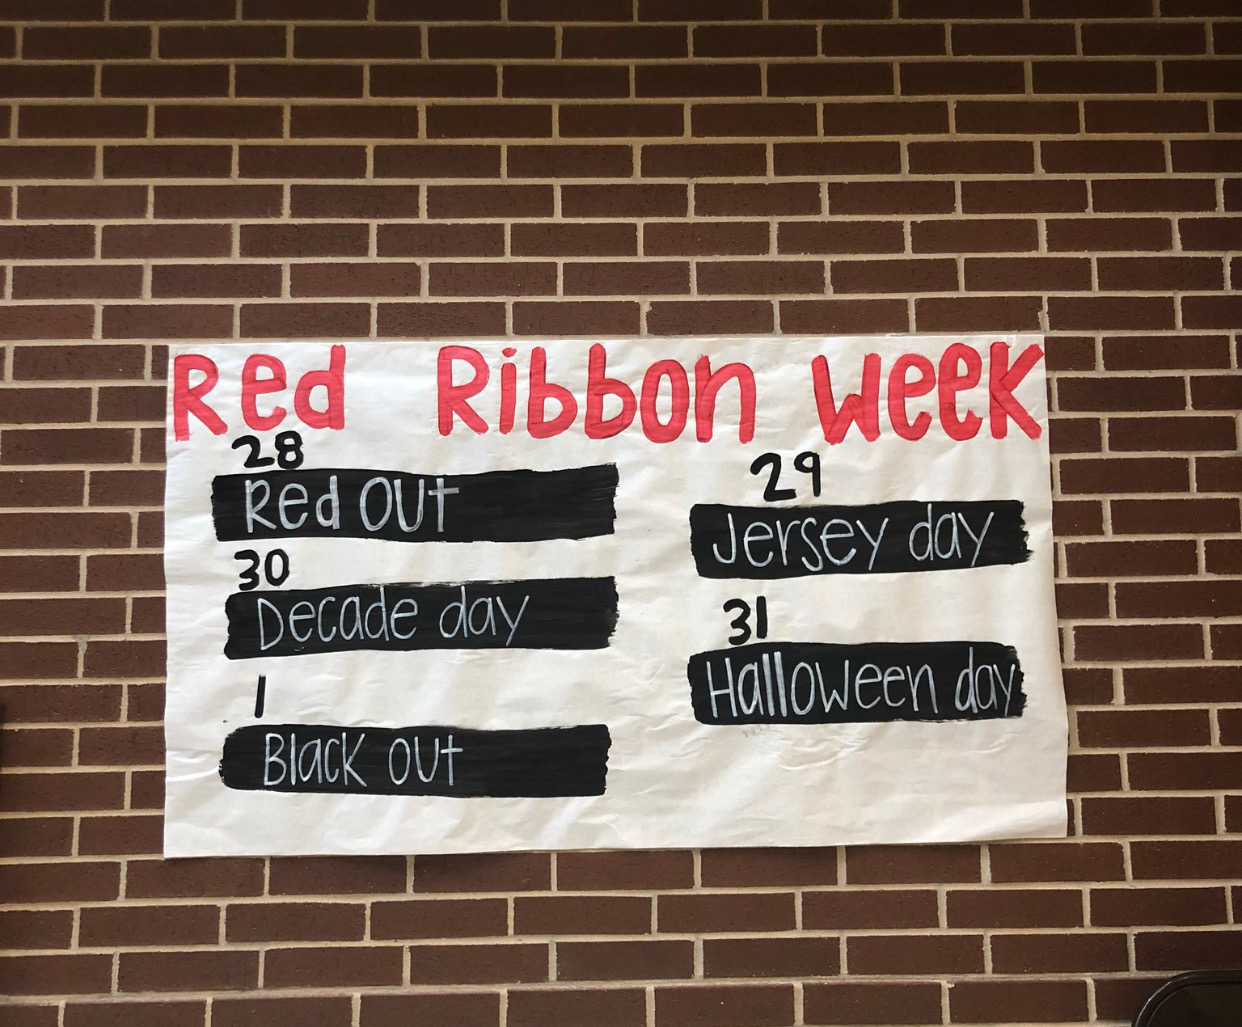 red ribbon week bulletin board ideas